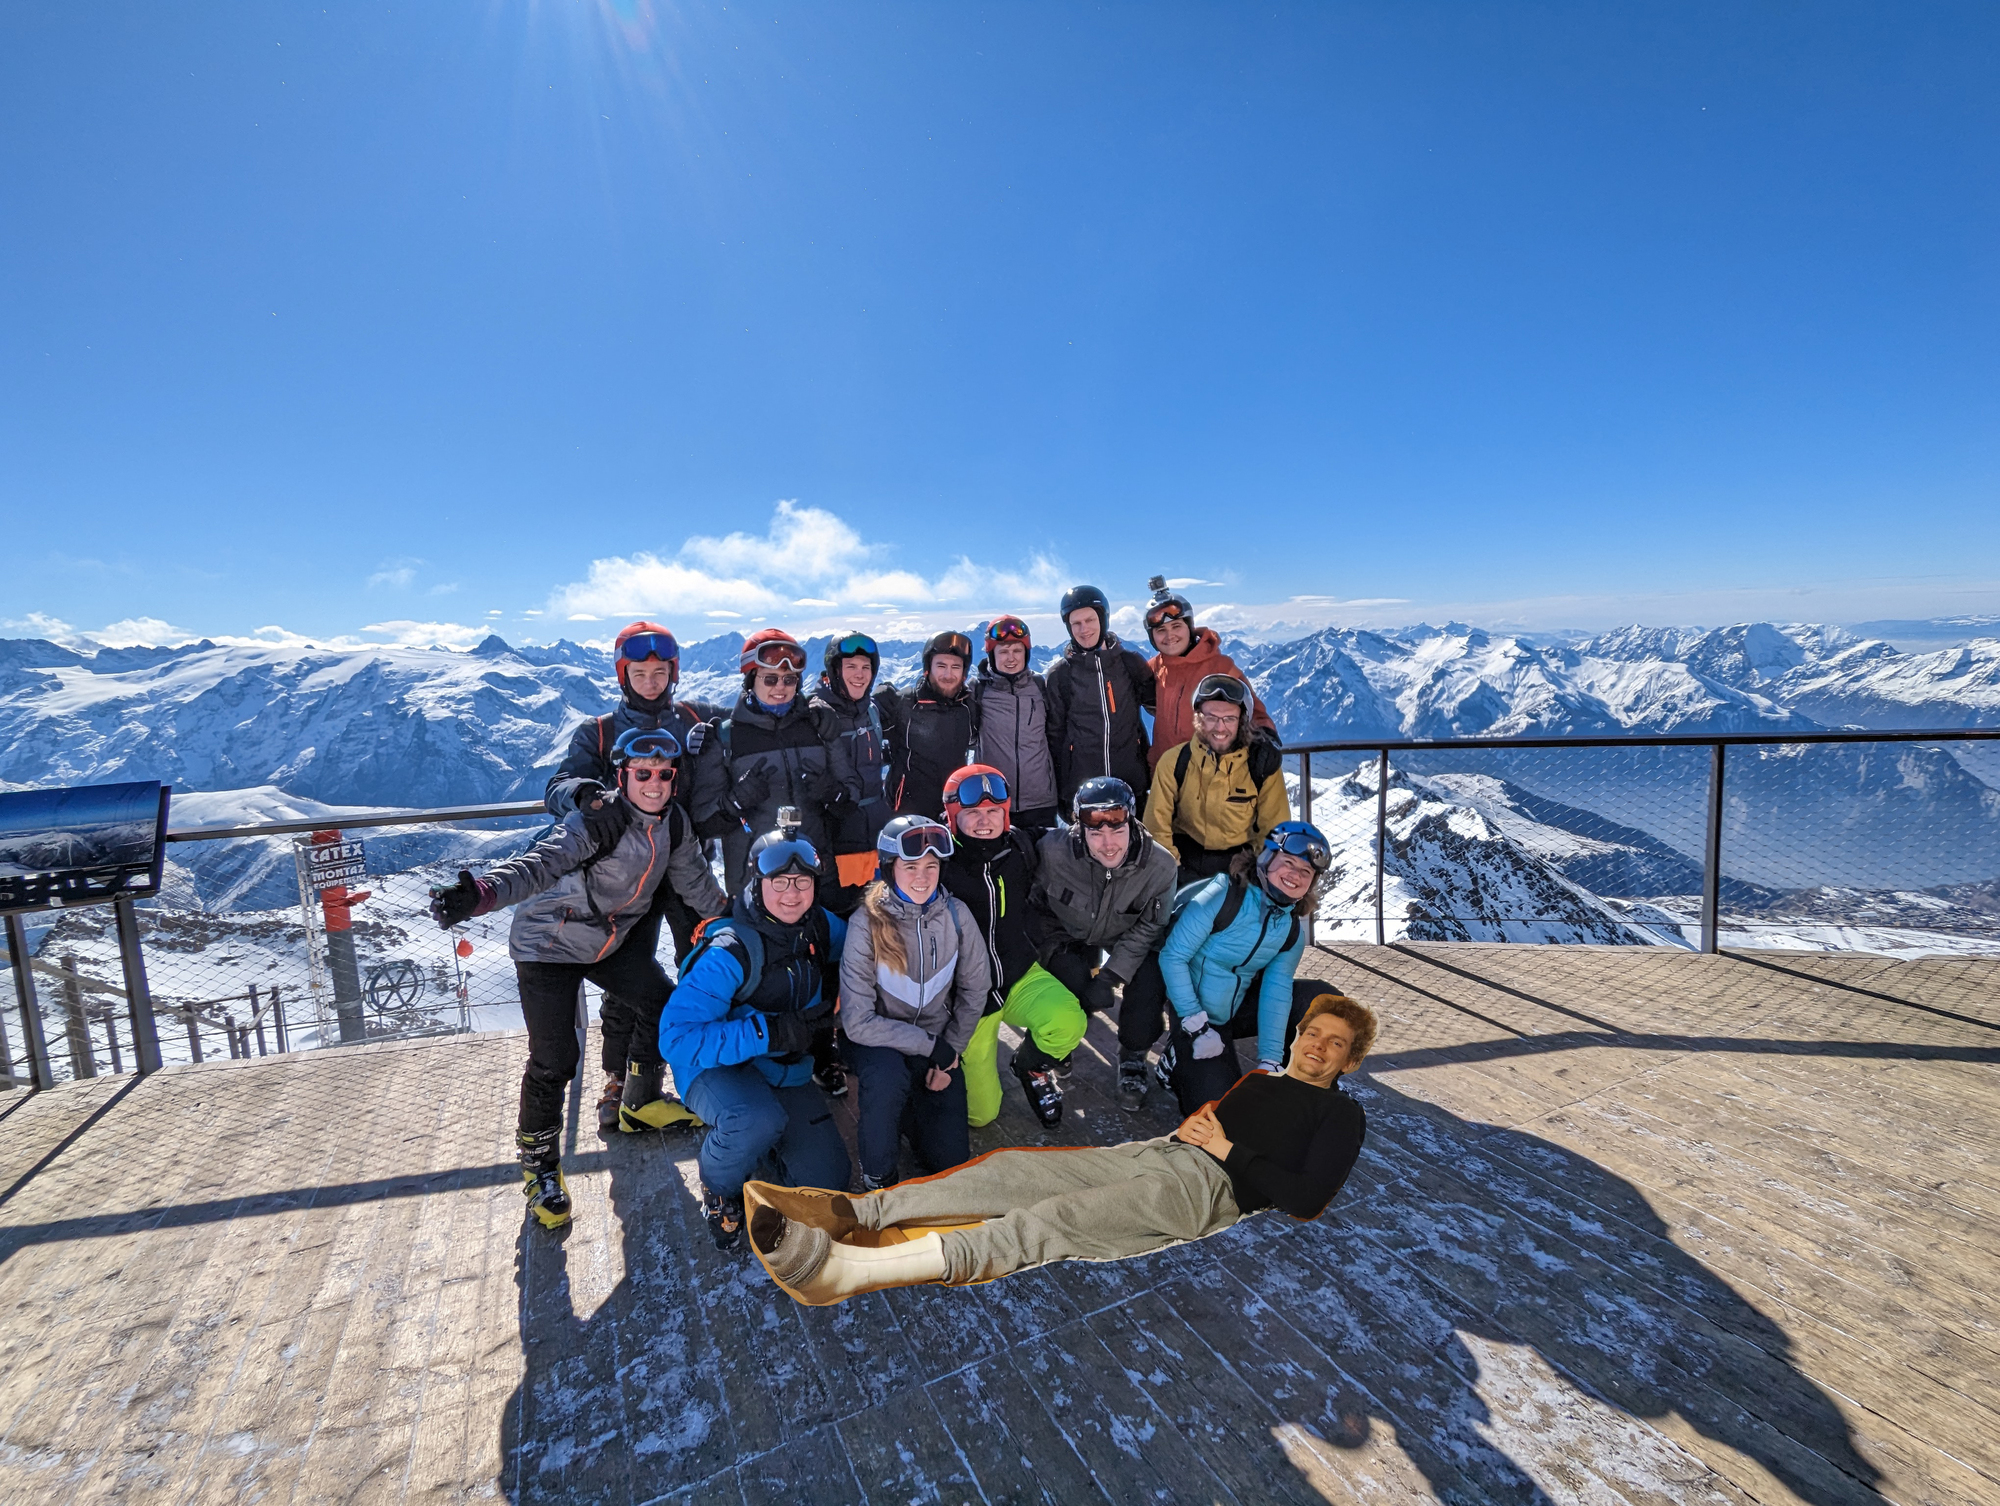 The participants of the SKItilla ski trip